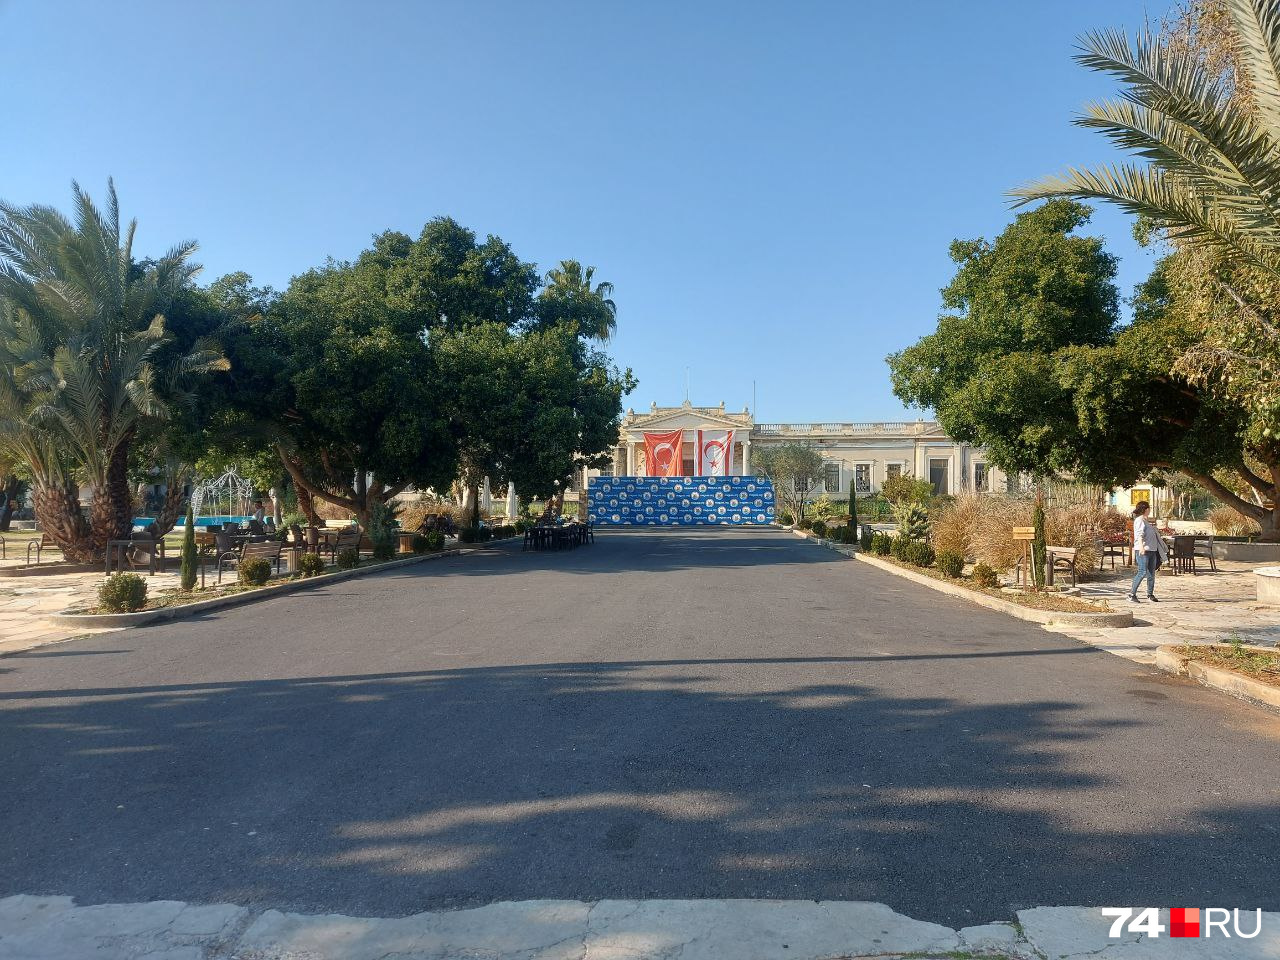 Административное здание — с двумя флагами: Турецкой Республики и Турецкой Республики Северного Кипра